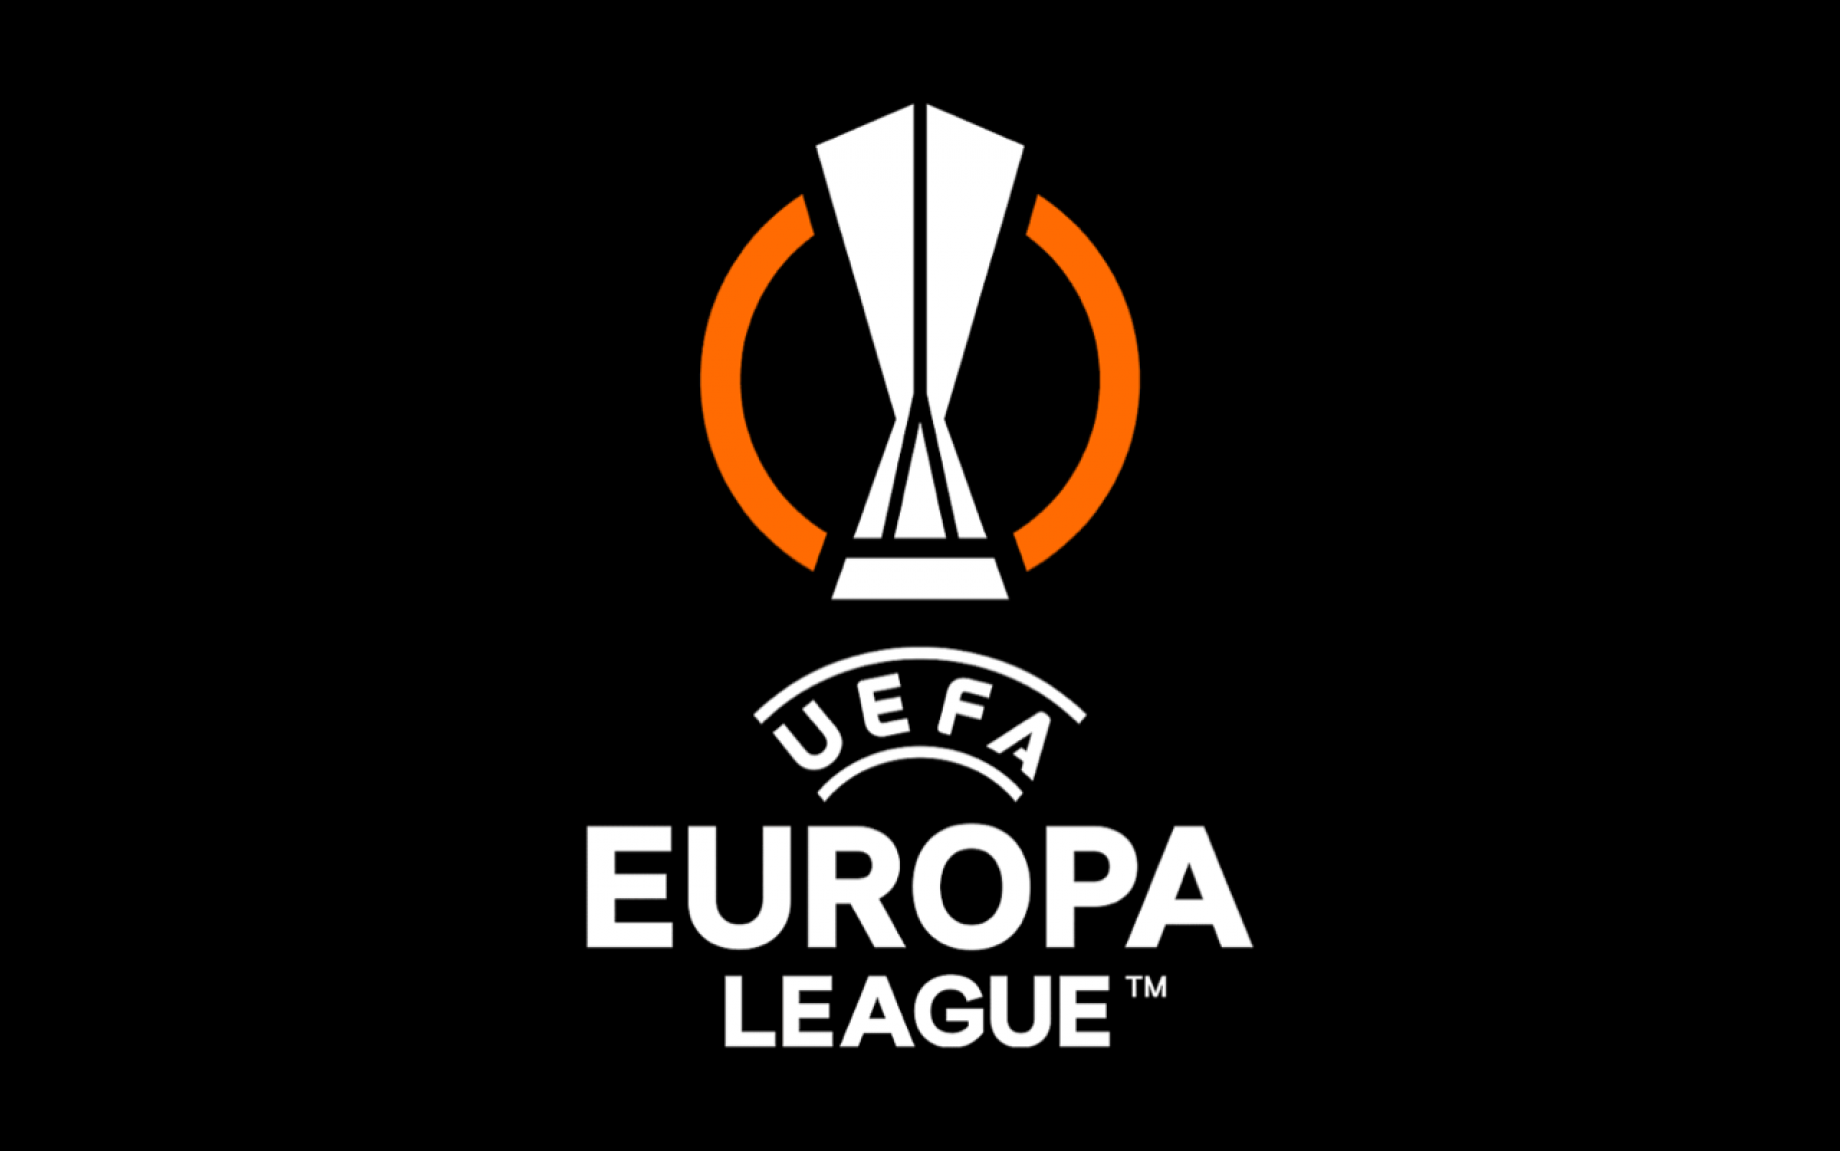 europa-league-2021-2022-logo-gpo-1.png